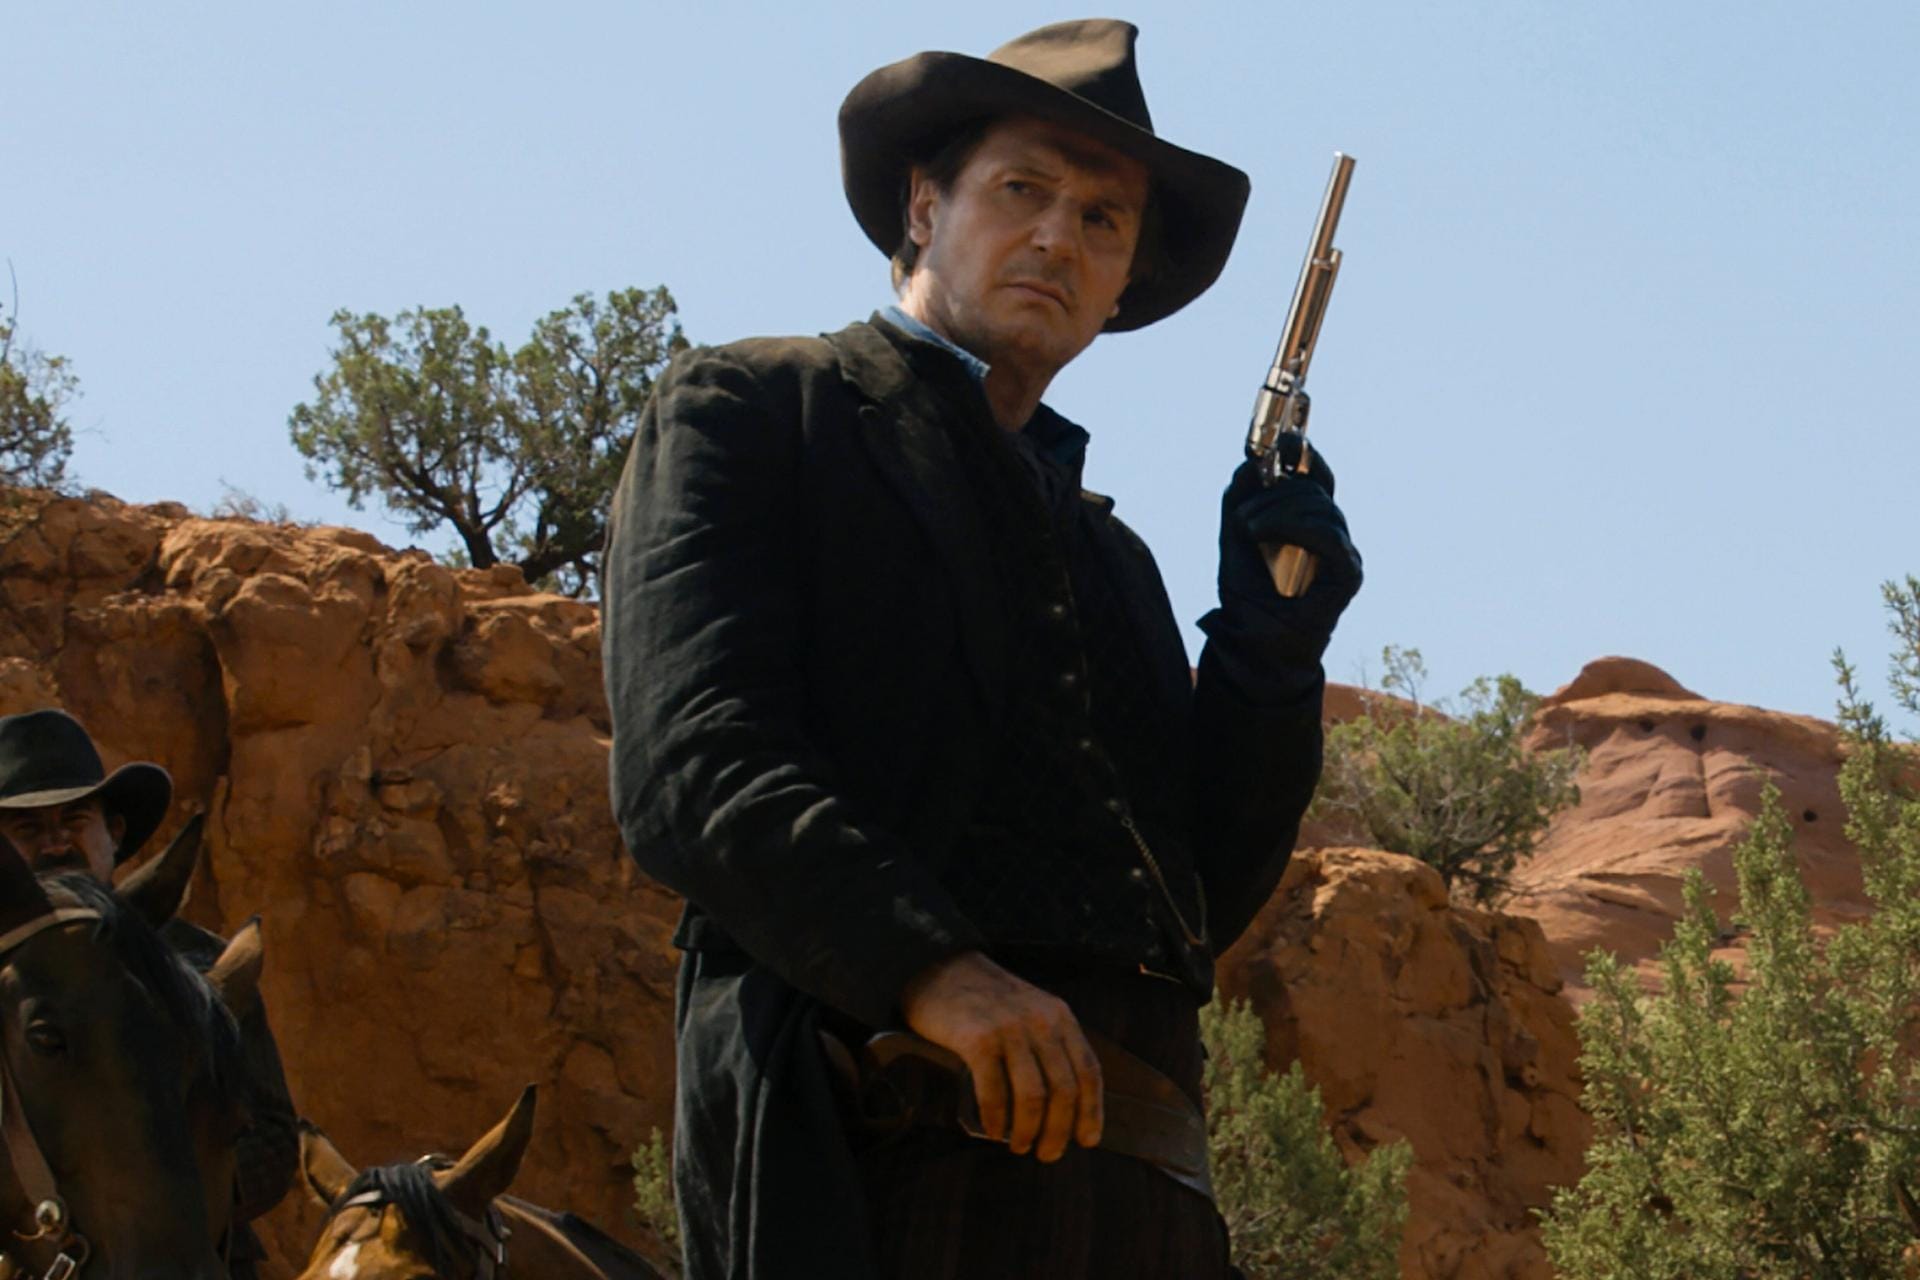 2014 verkörperte Liam Neeson in "A Million Ways to Die in the West" den scheußlichen Banditen Clinch Leatherwood.